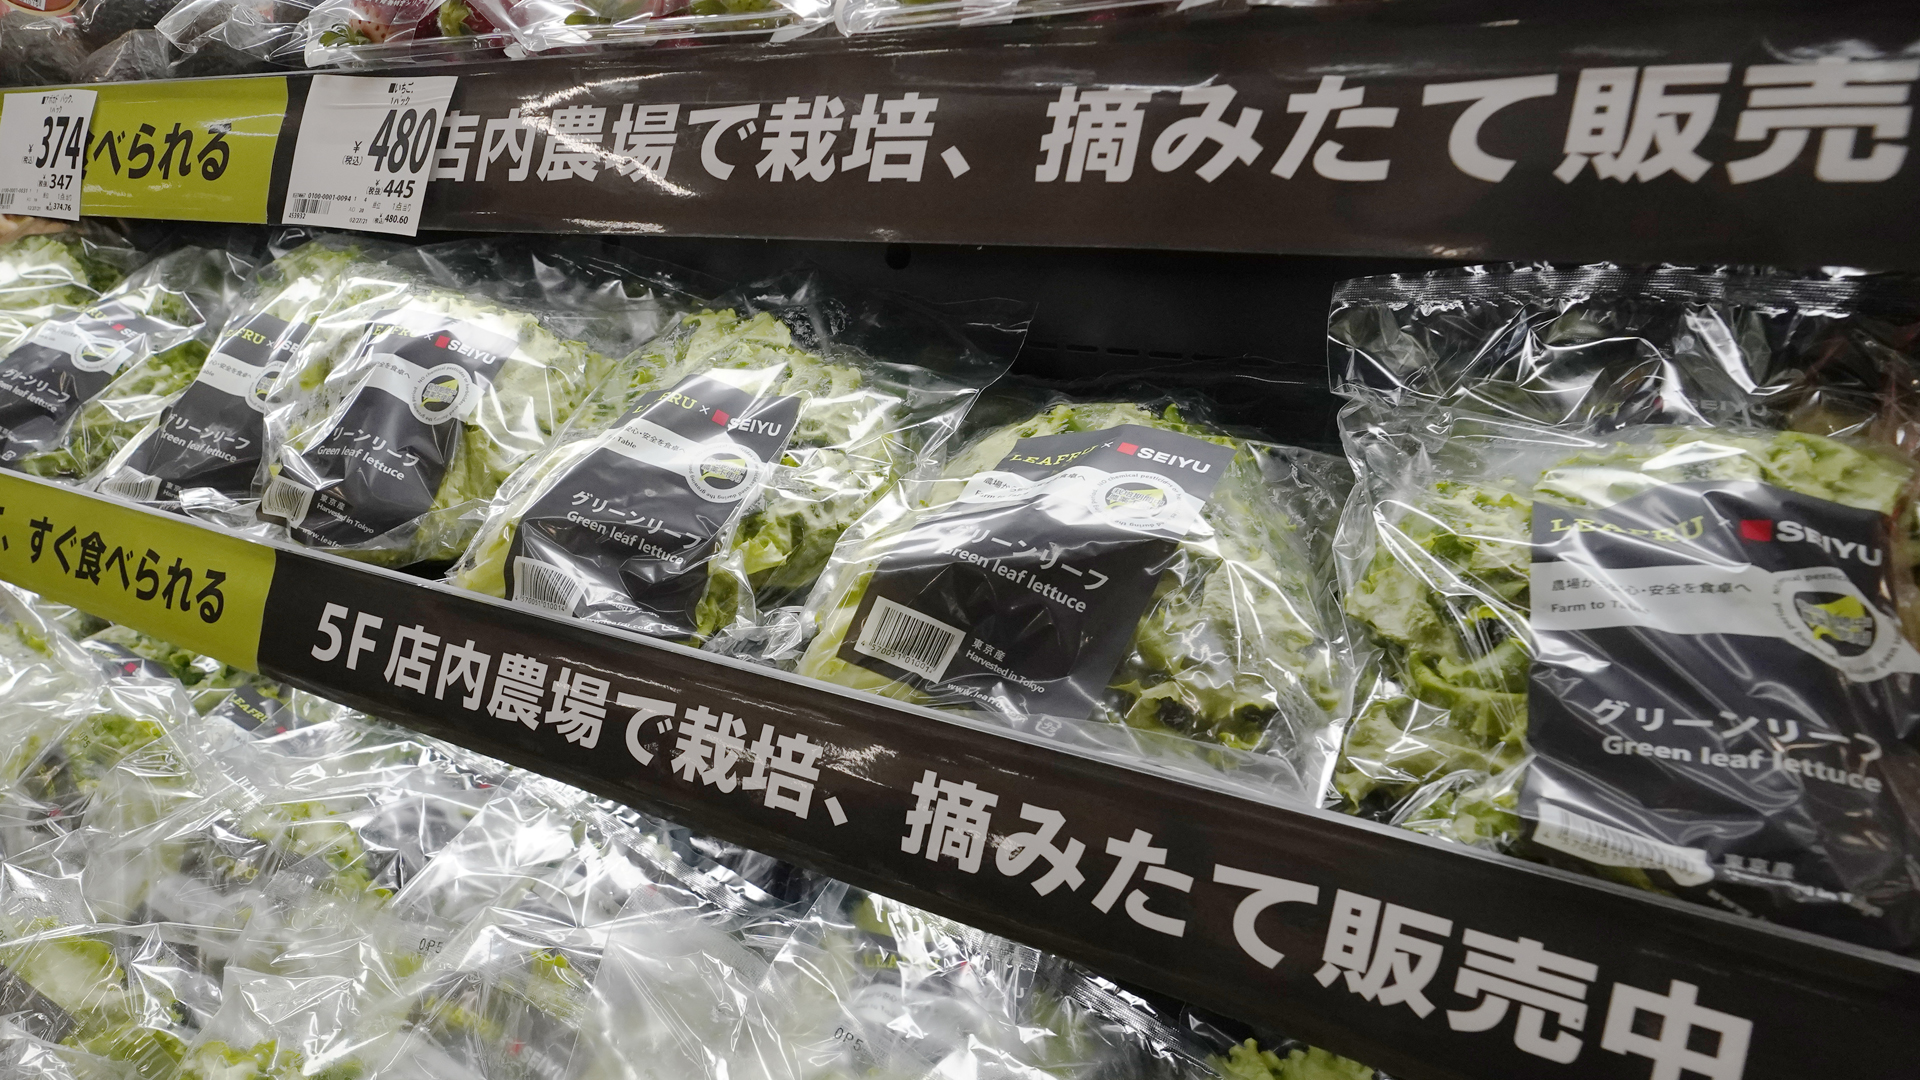 Salat, Snacks, selbst Bananen: fast alles, was in Japan im Supermarkt zu kaufen ist, wird in einer Plastikhülle angeboten. | picture alliance/dpa/Jiji Press 